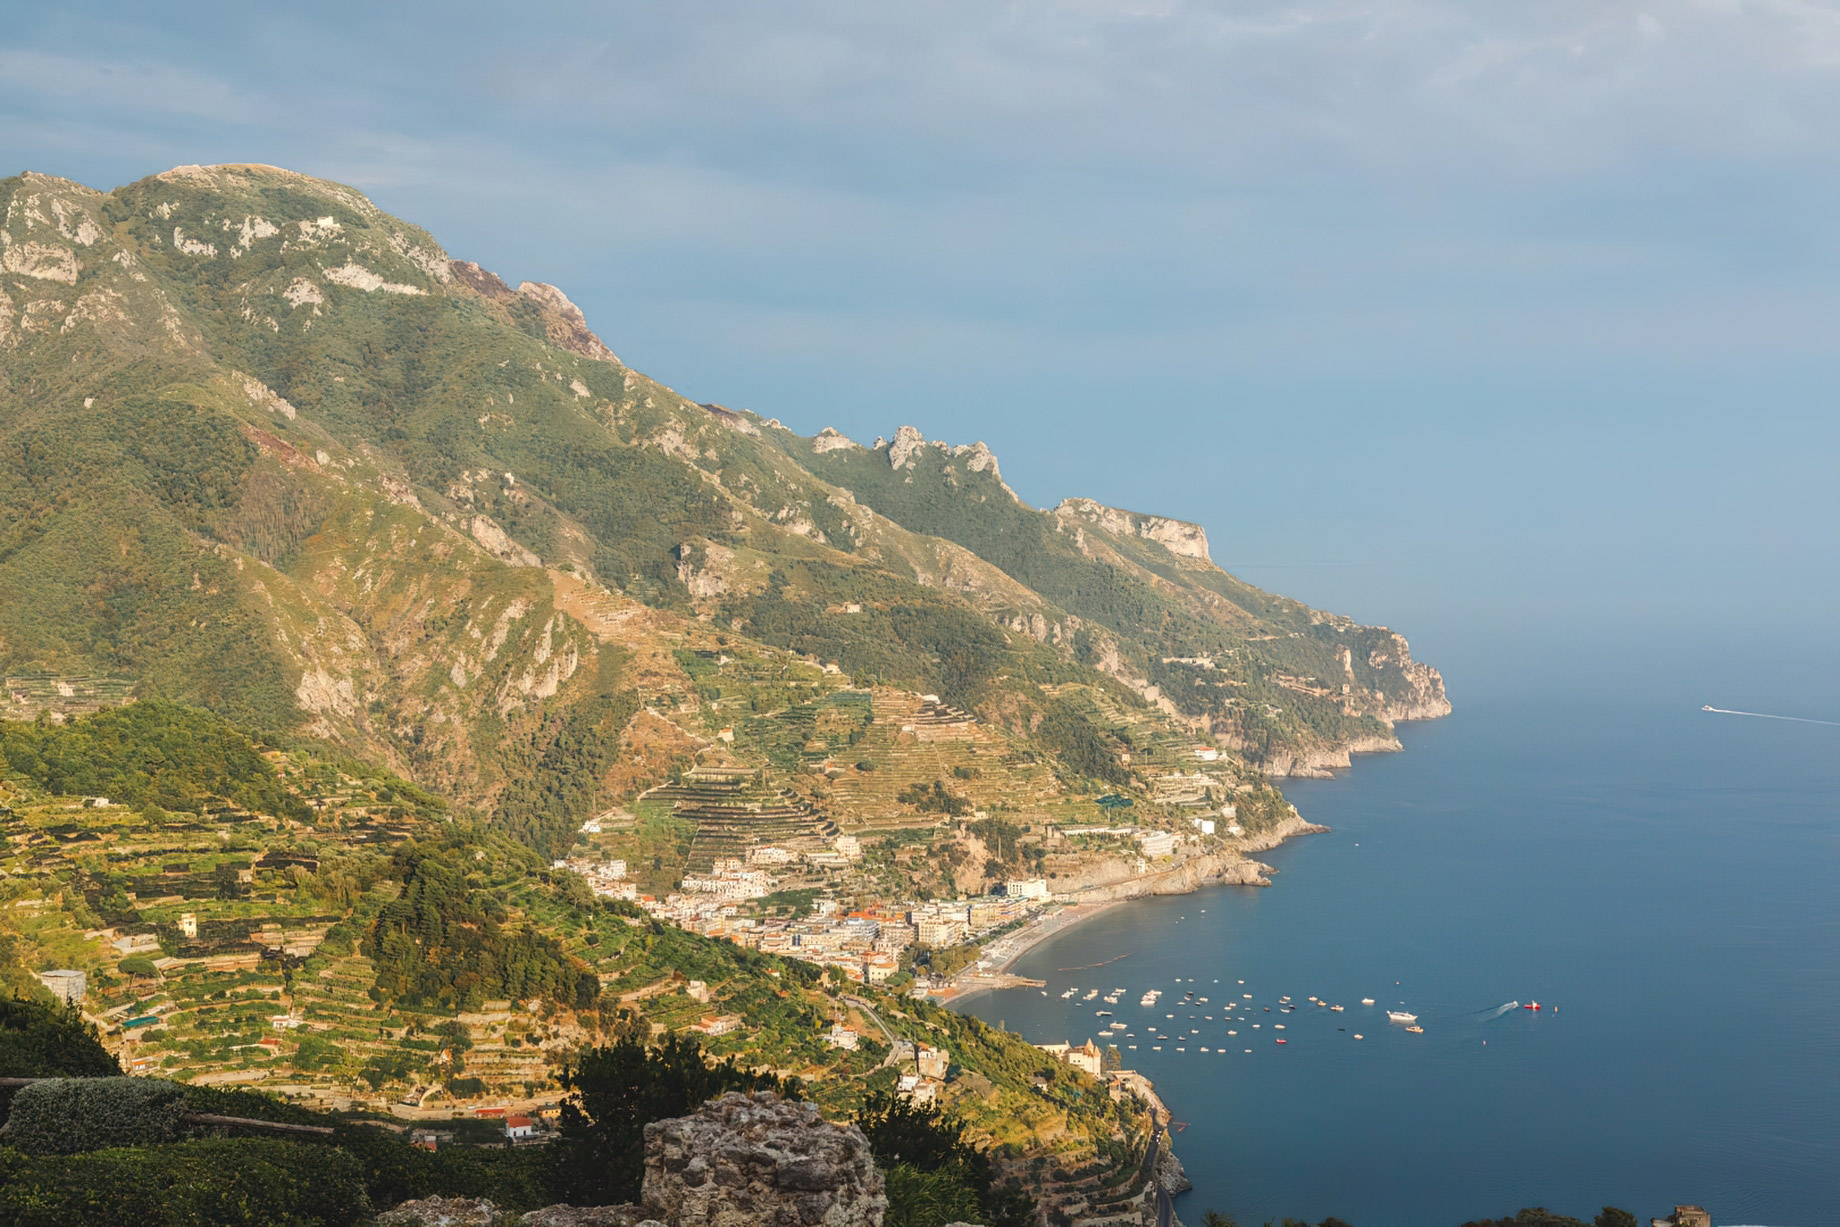 Caruso, A Belmond Hotel, Amalfi Coast – Ravello, Italy – Amalfi Coast Aerial View